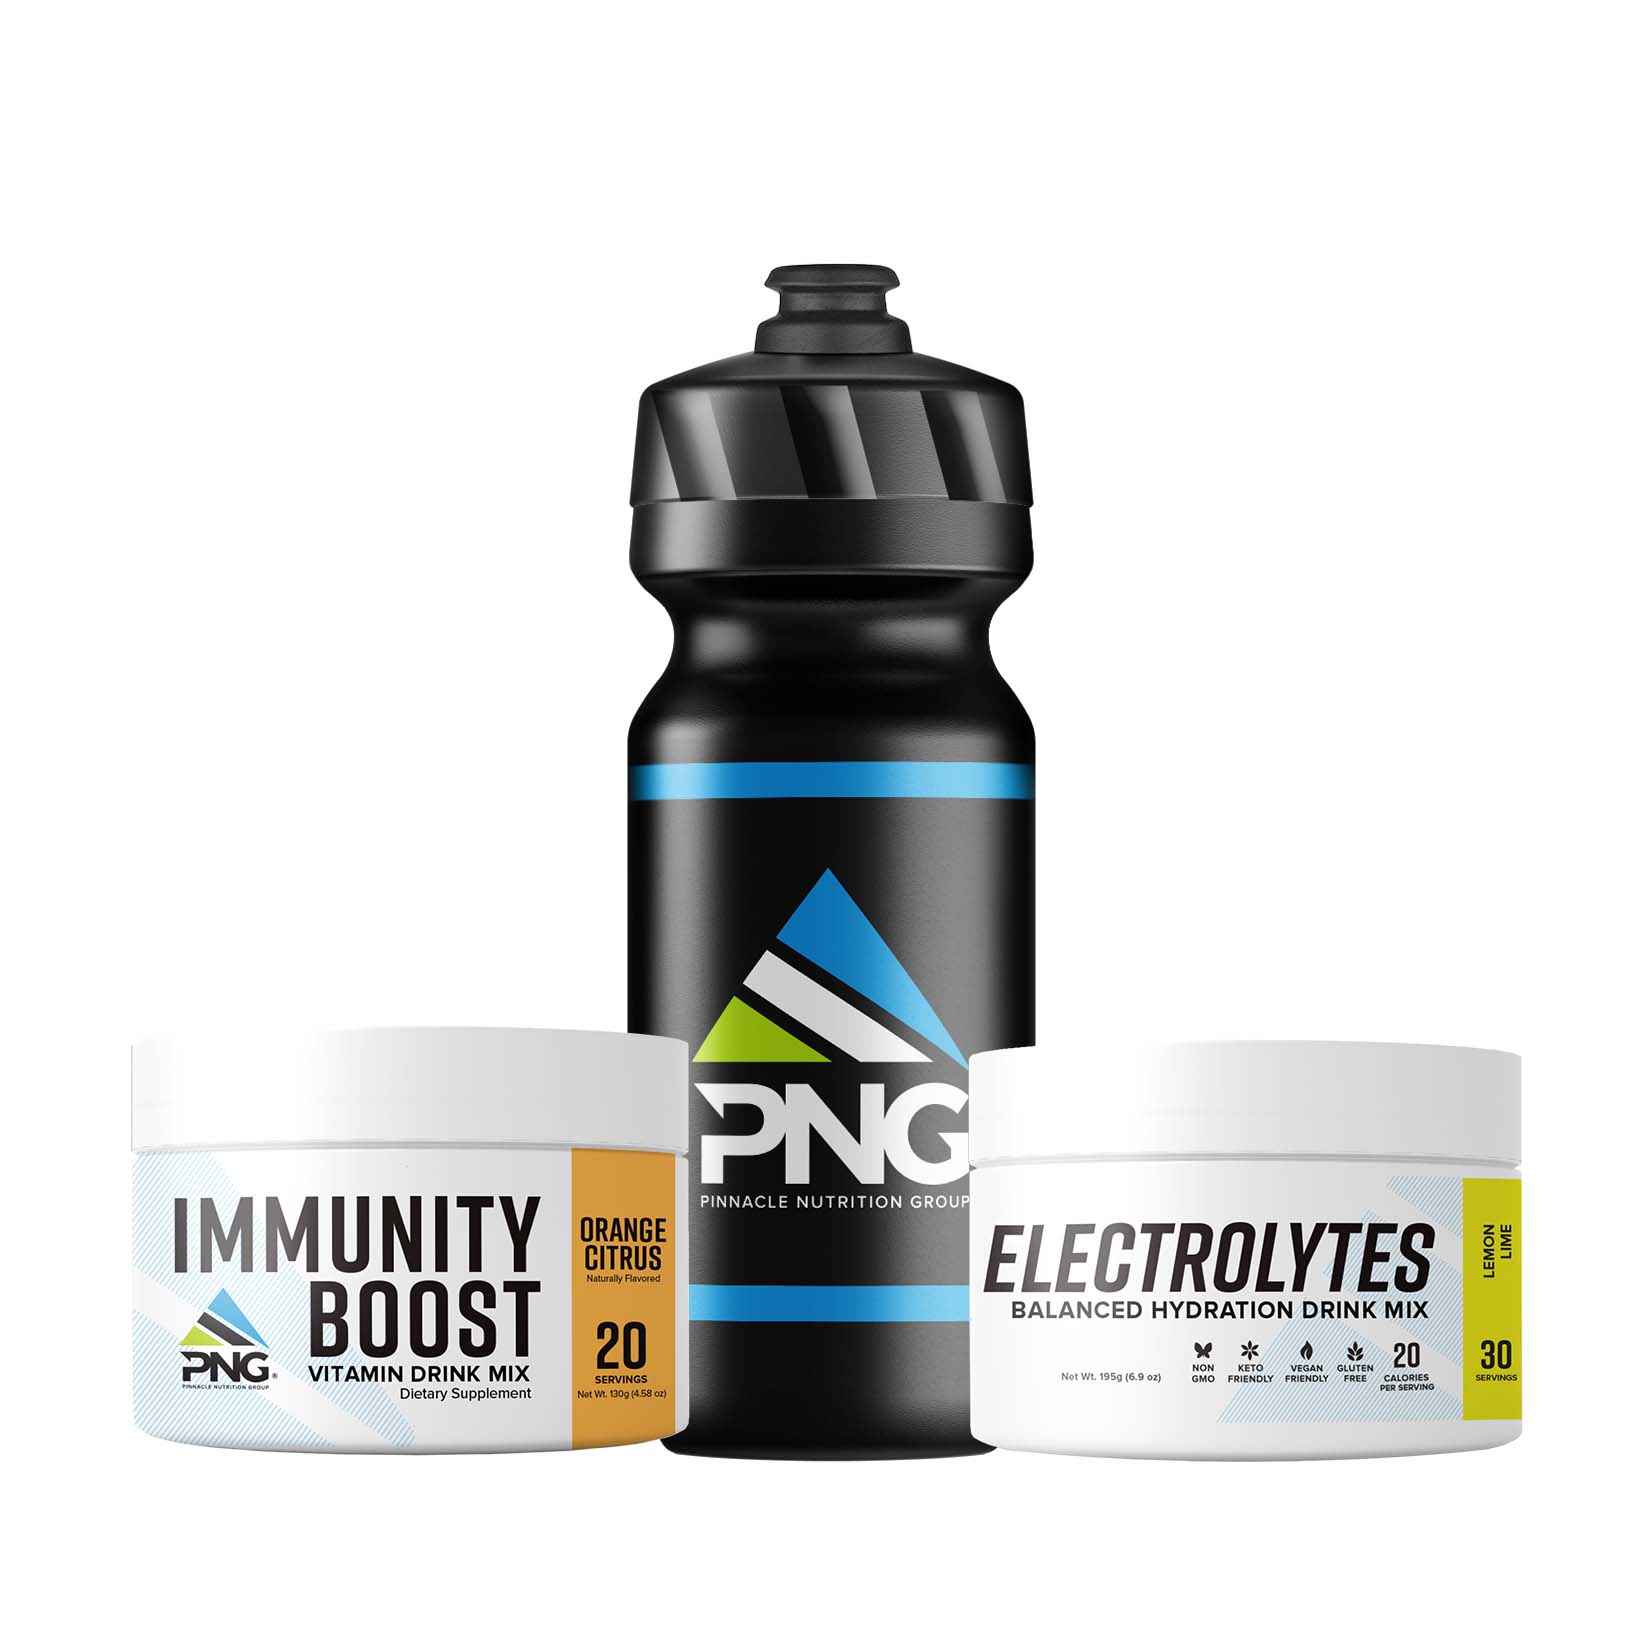 Immunity Bundle - Pinnacle Nutrition Group